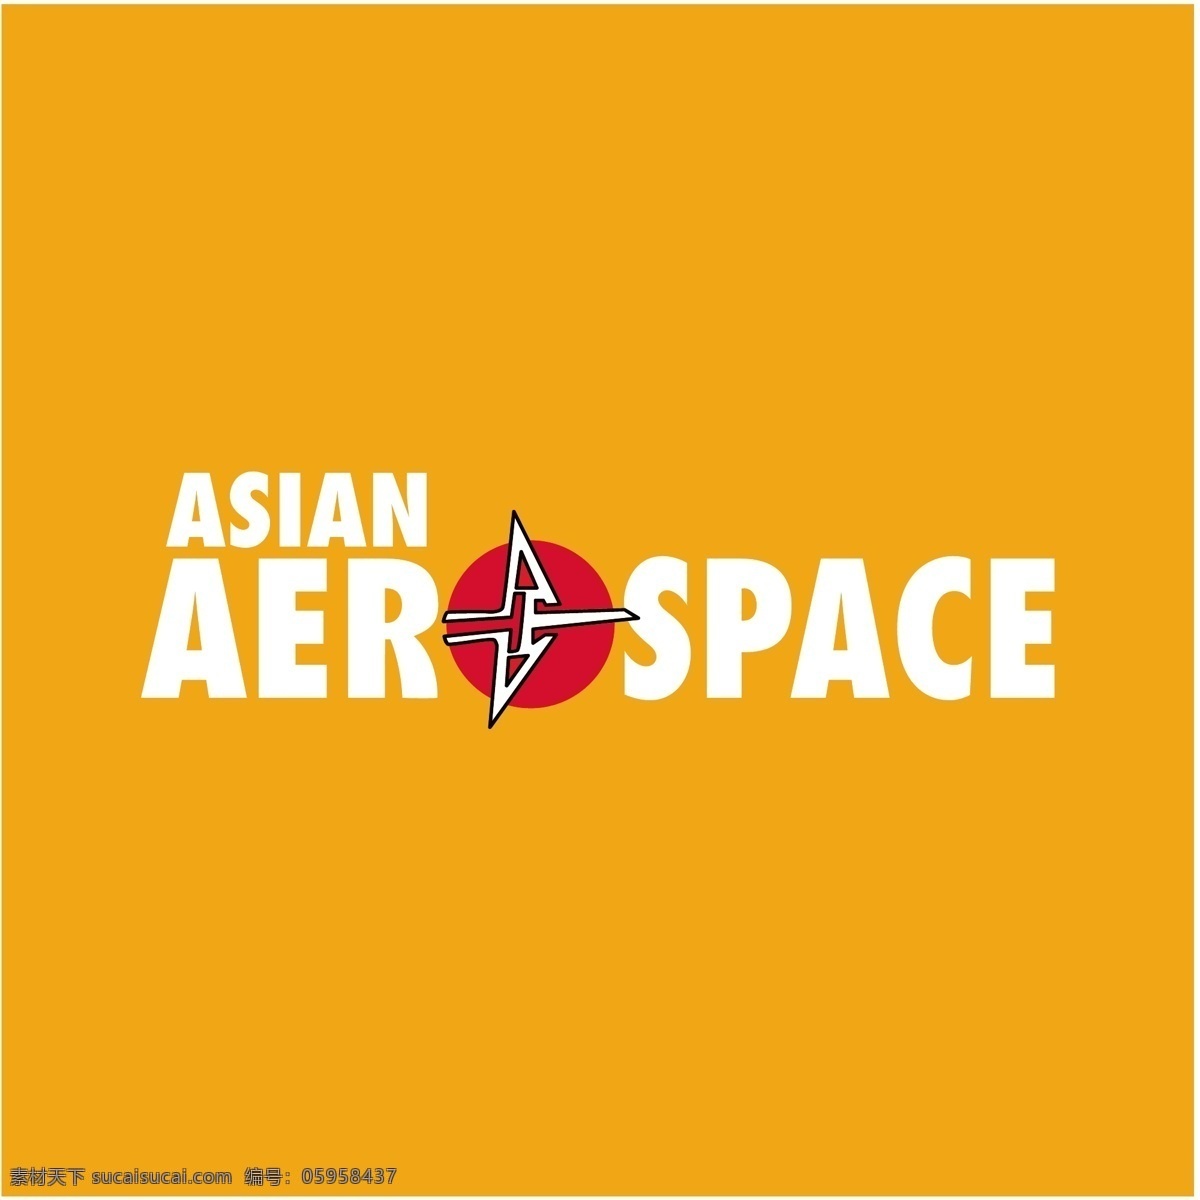 亚洲 航空 娇蘸教 矢量图 其他矢量图